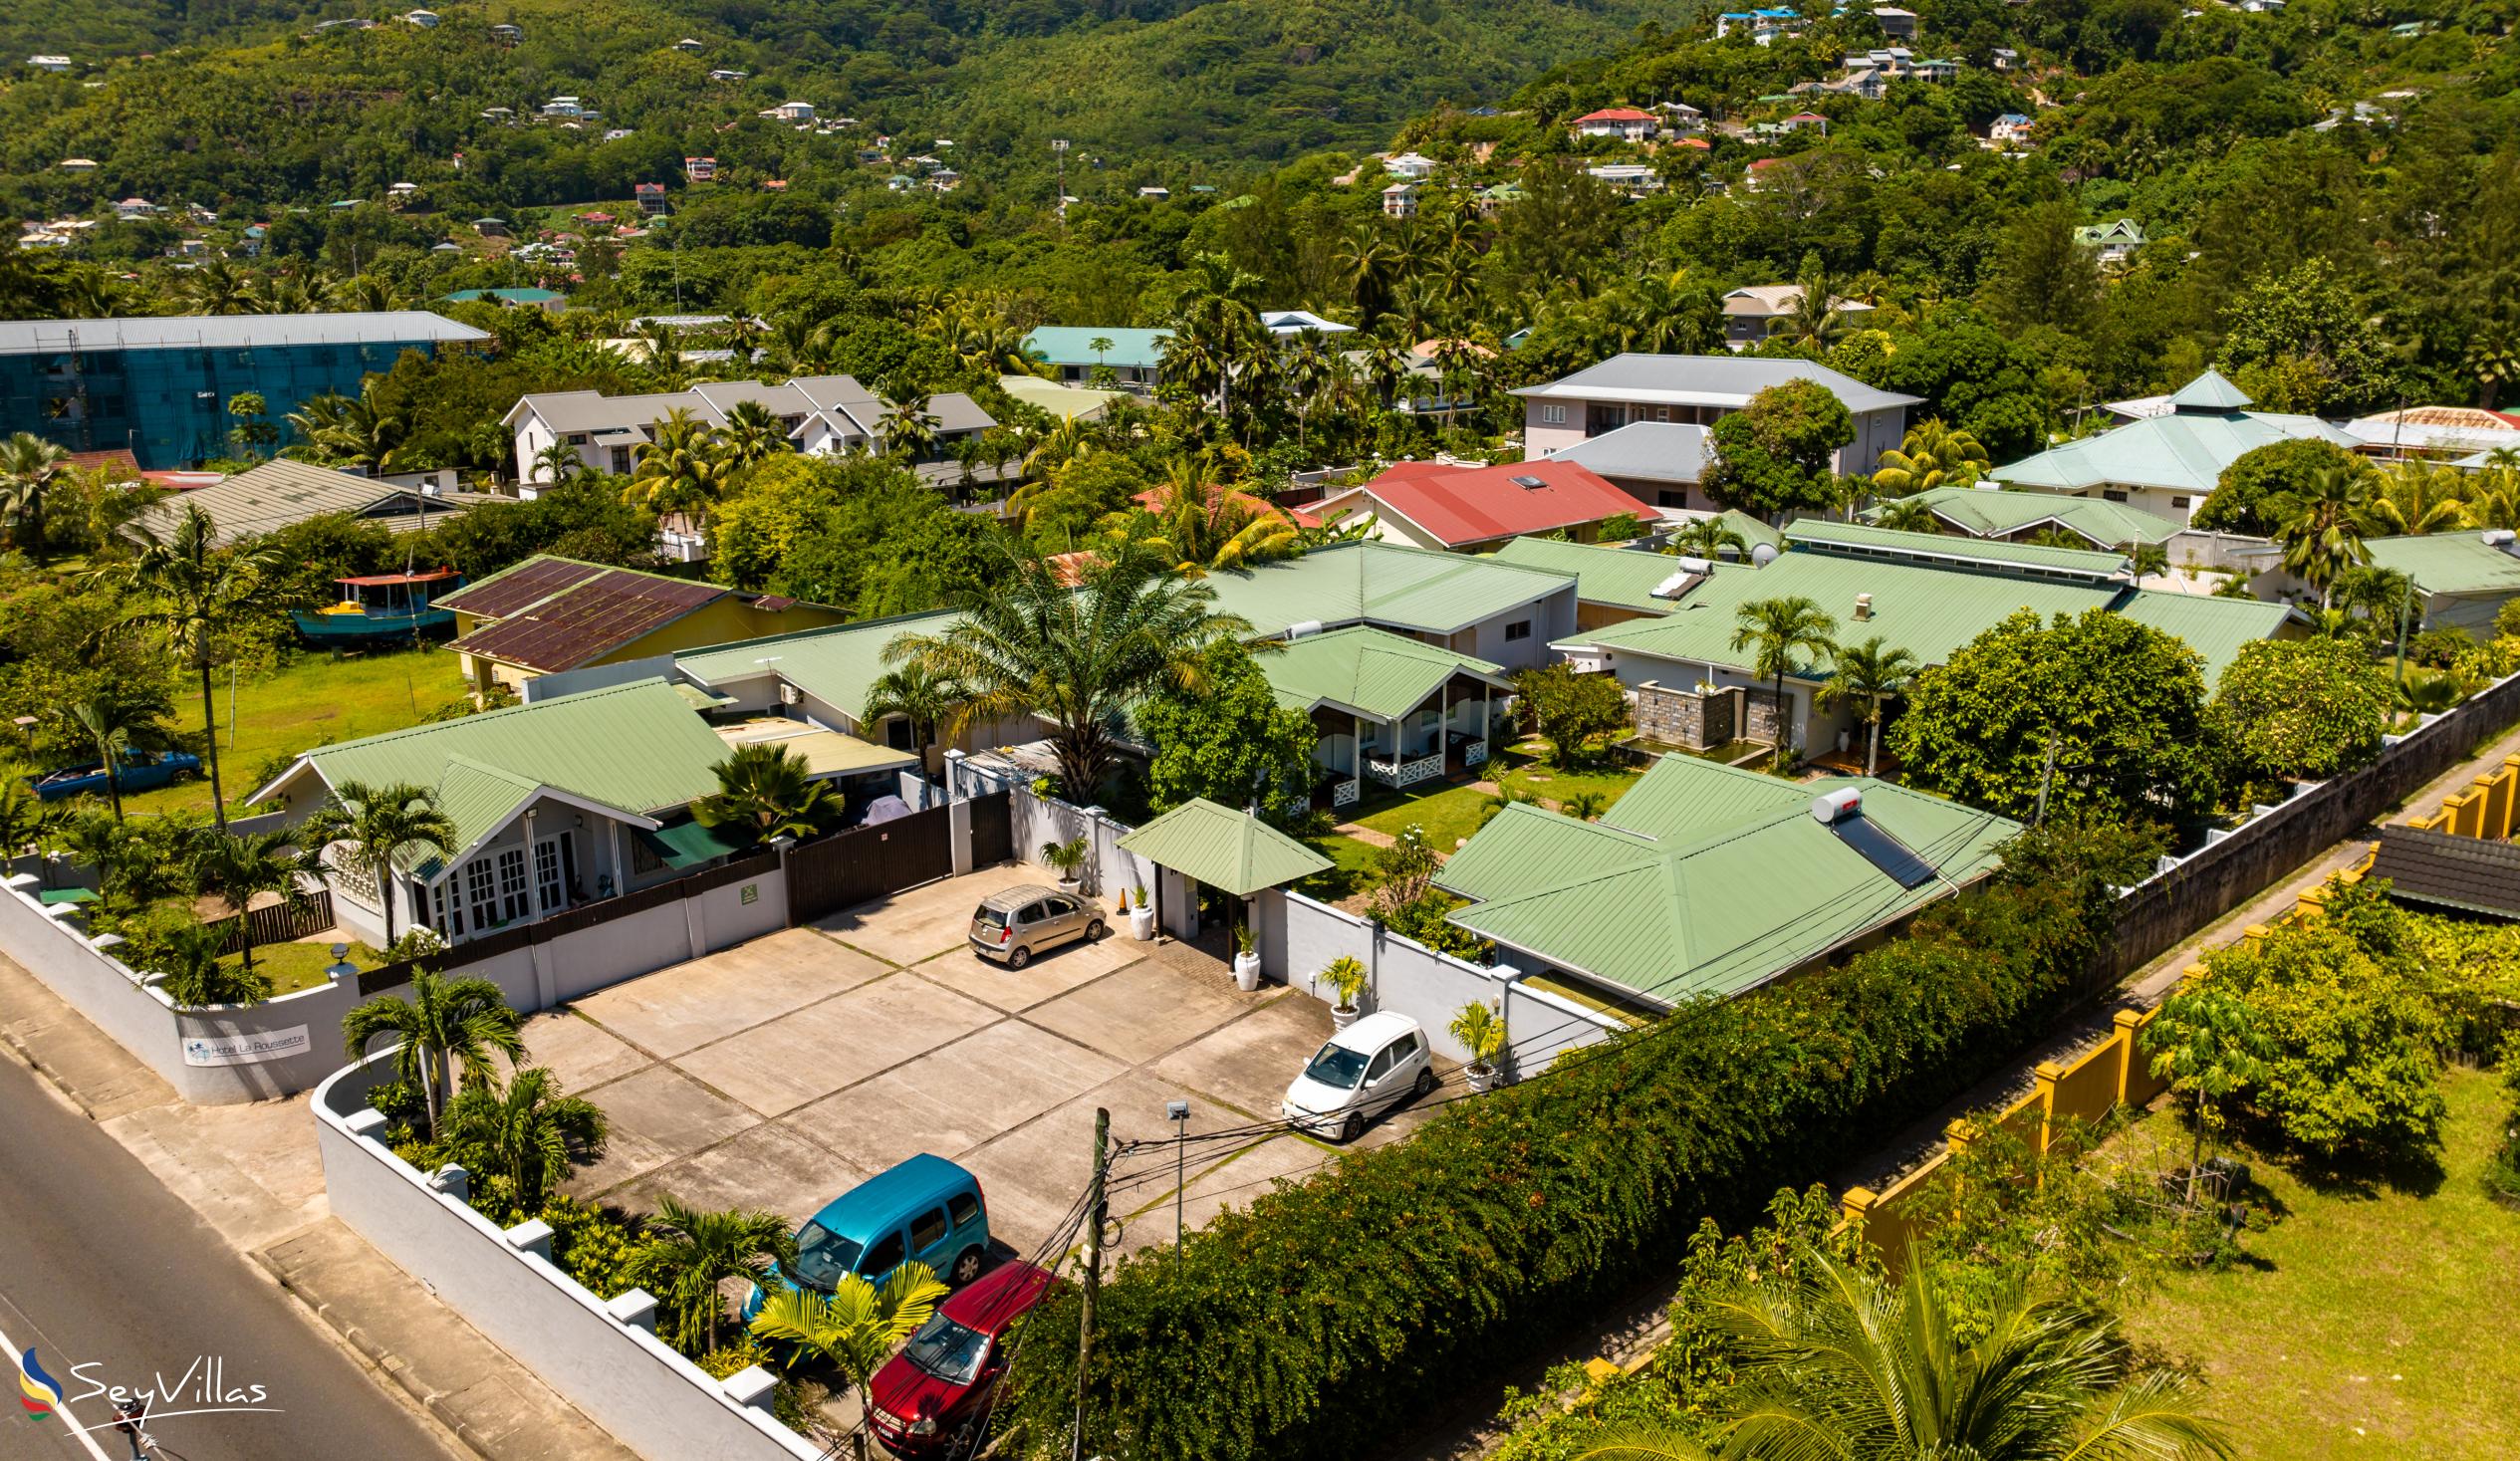 Photo 5: Hotel La Roussette - Outdoor area - Mahé (Seychelles)